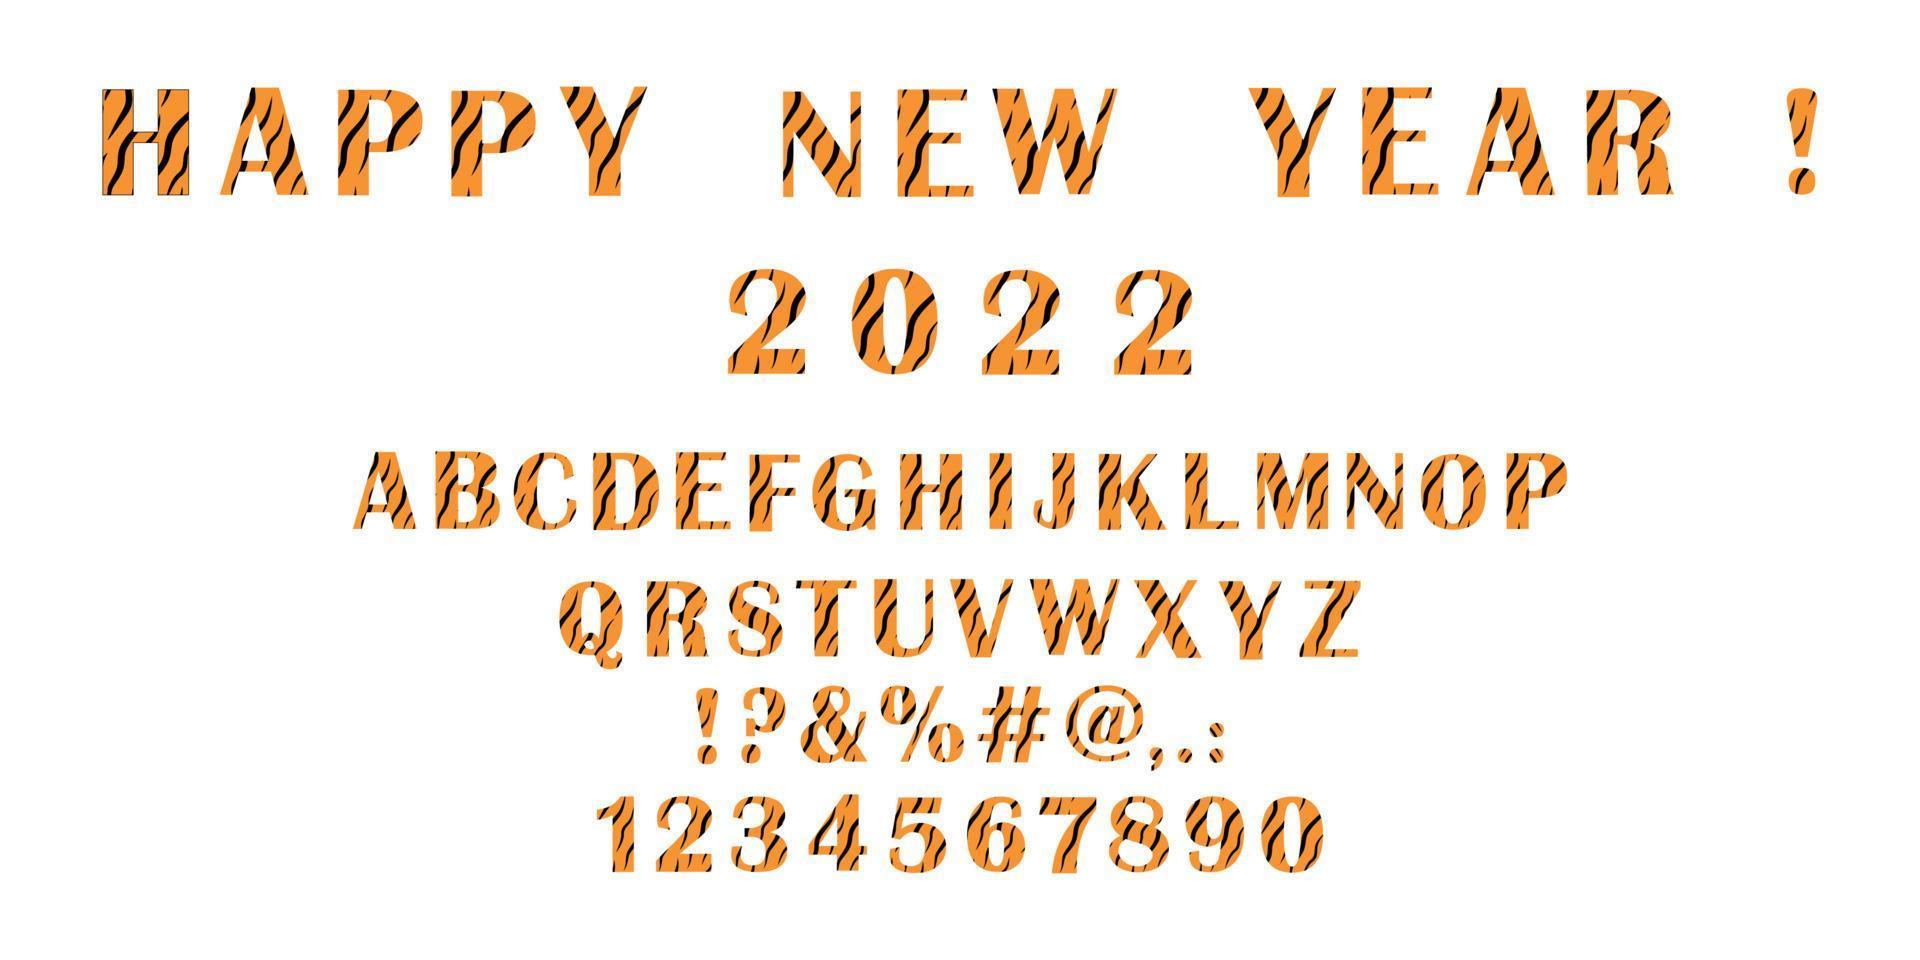 conjunto de alfabeto inglés y números, signos y texto de feliz año nuevo con patrón de tigre. decoración navideña. vector